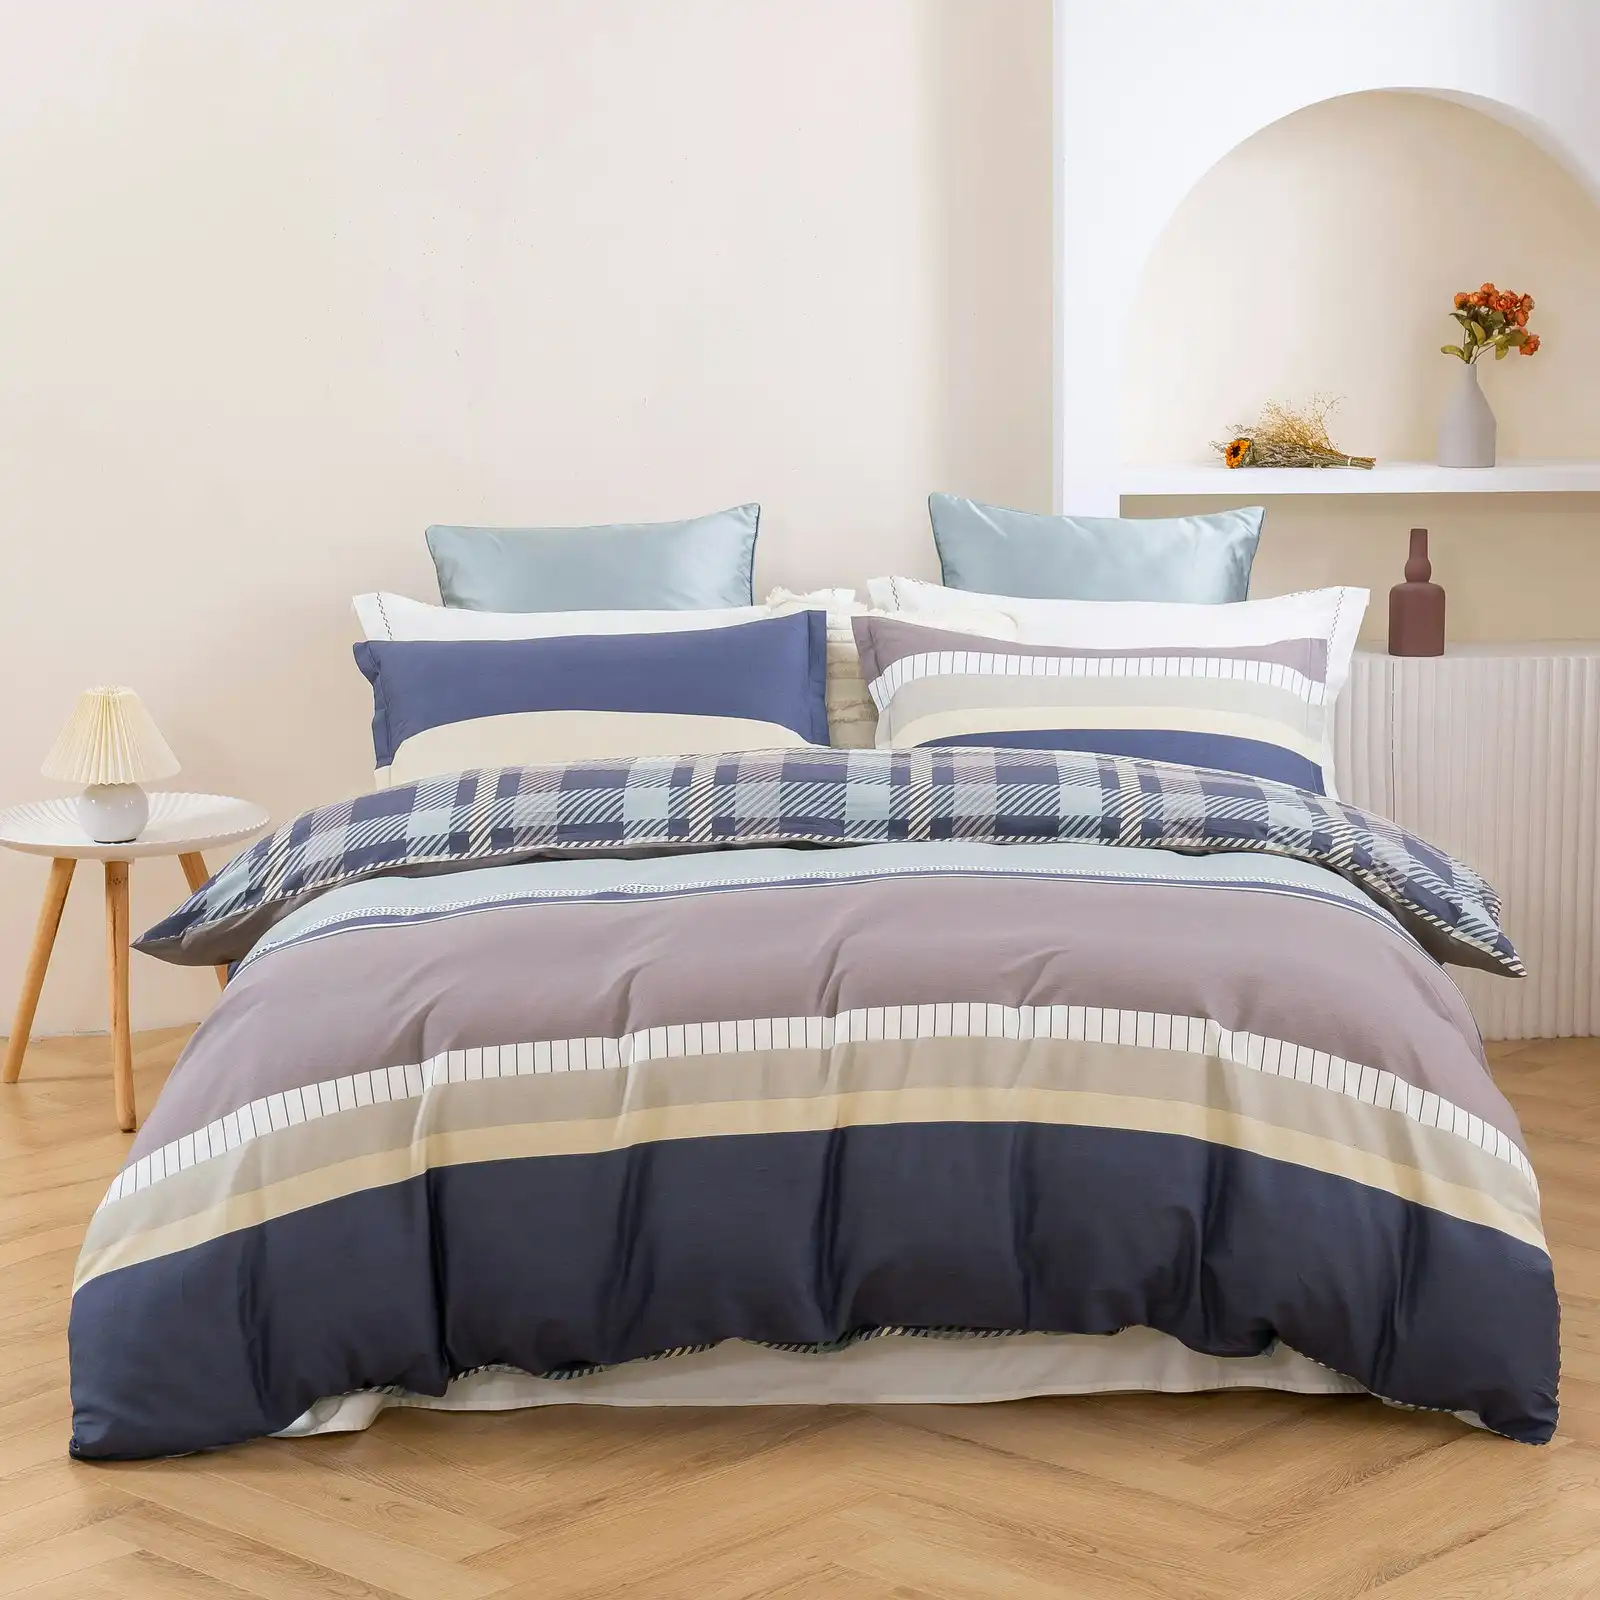 Dreamaker Gaia 100% Cotton Reversible Quilt Cover Set Double Bed